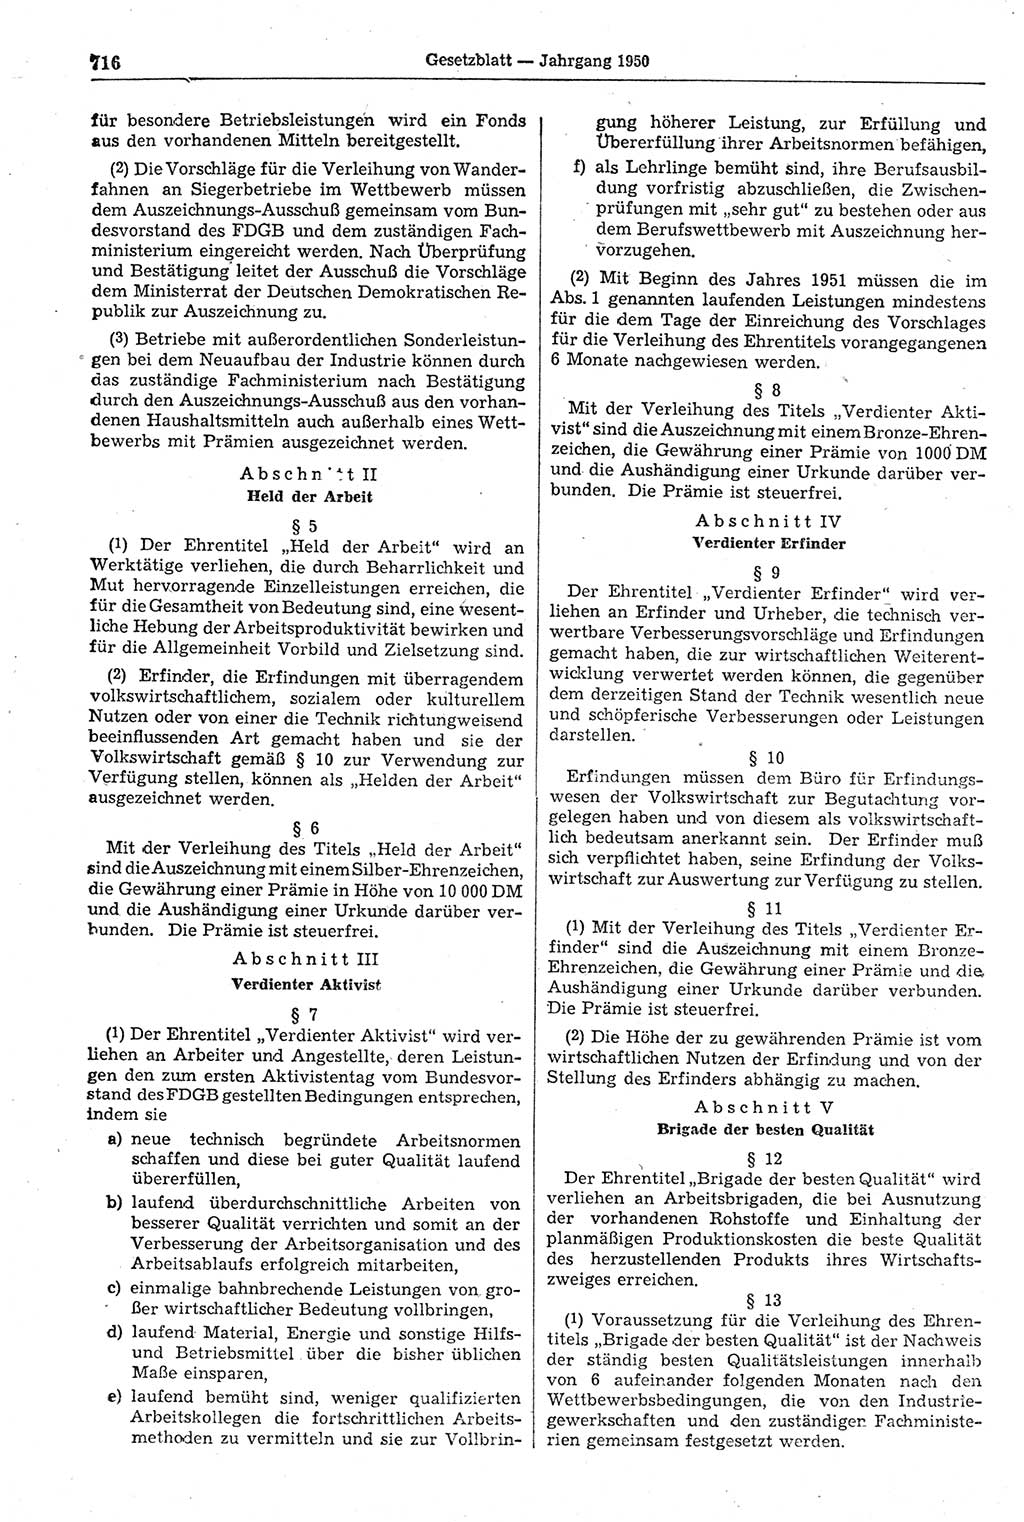 Gesetzblatt (GBl.) der Deutschen Demokratischen Republik (DDR) 1950, Seite 716 (GBl. DDR 1950, S. 716)